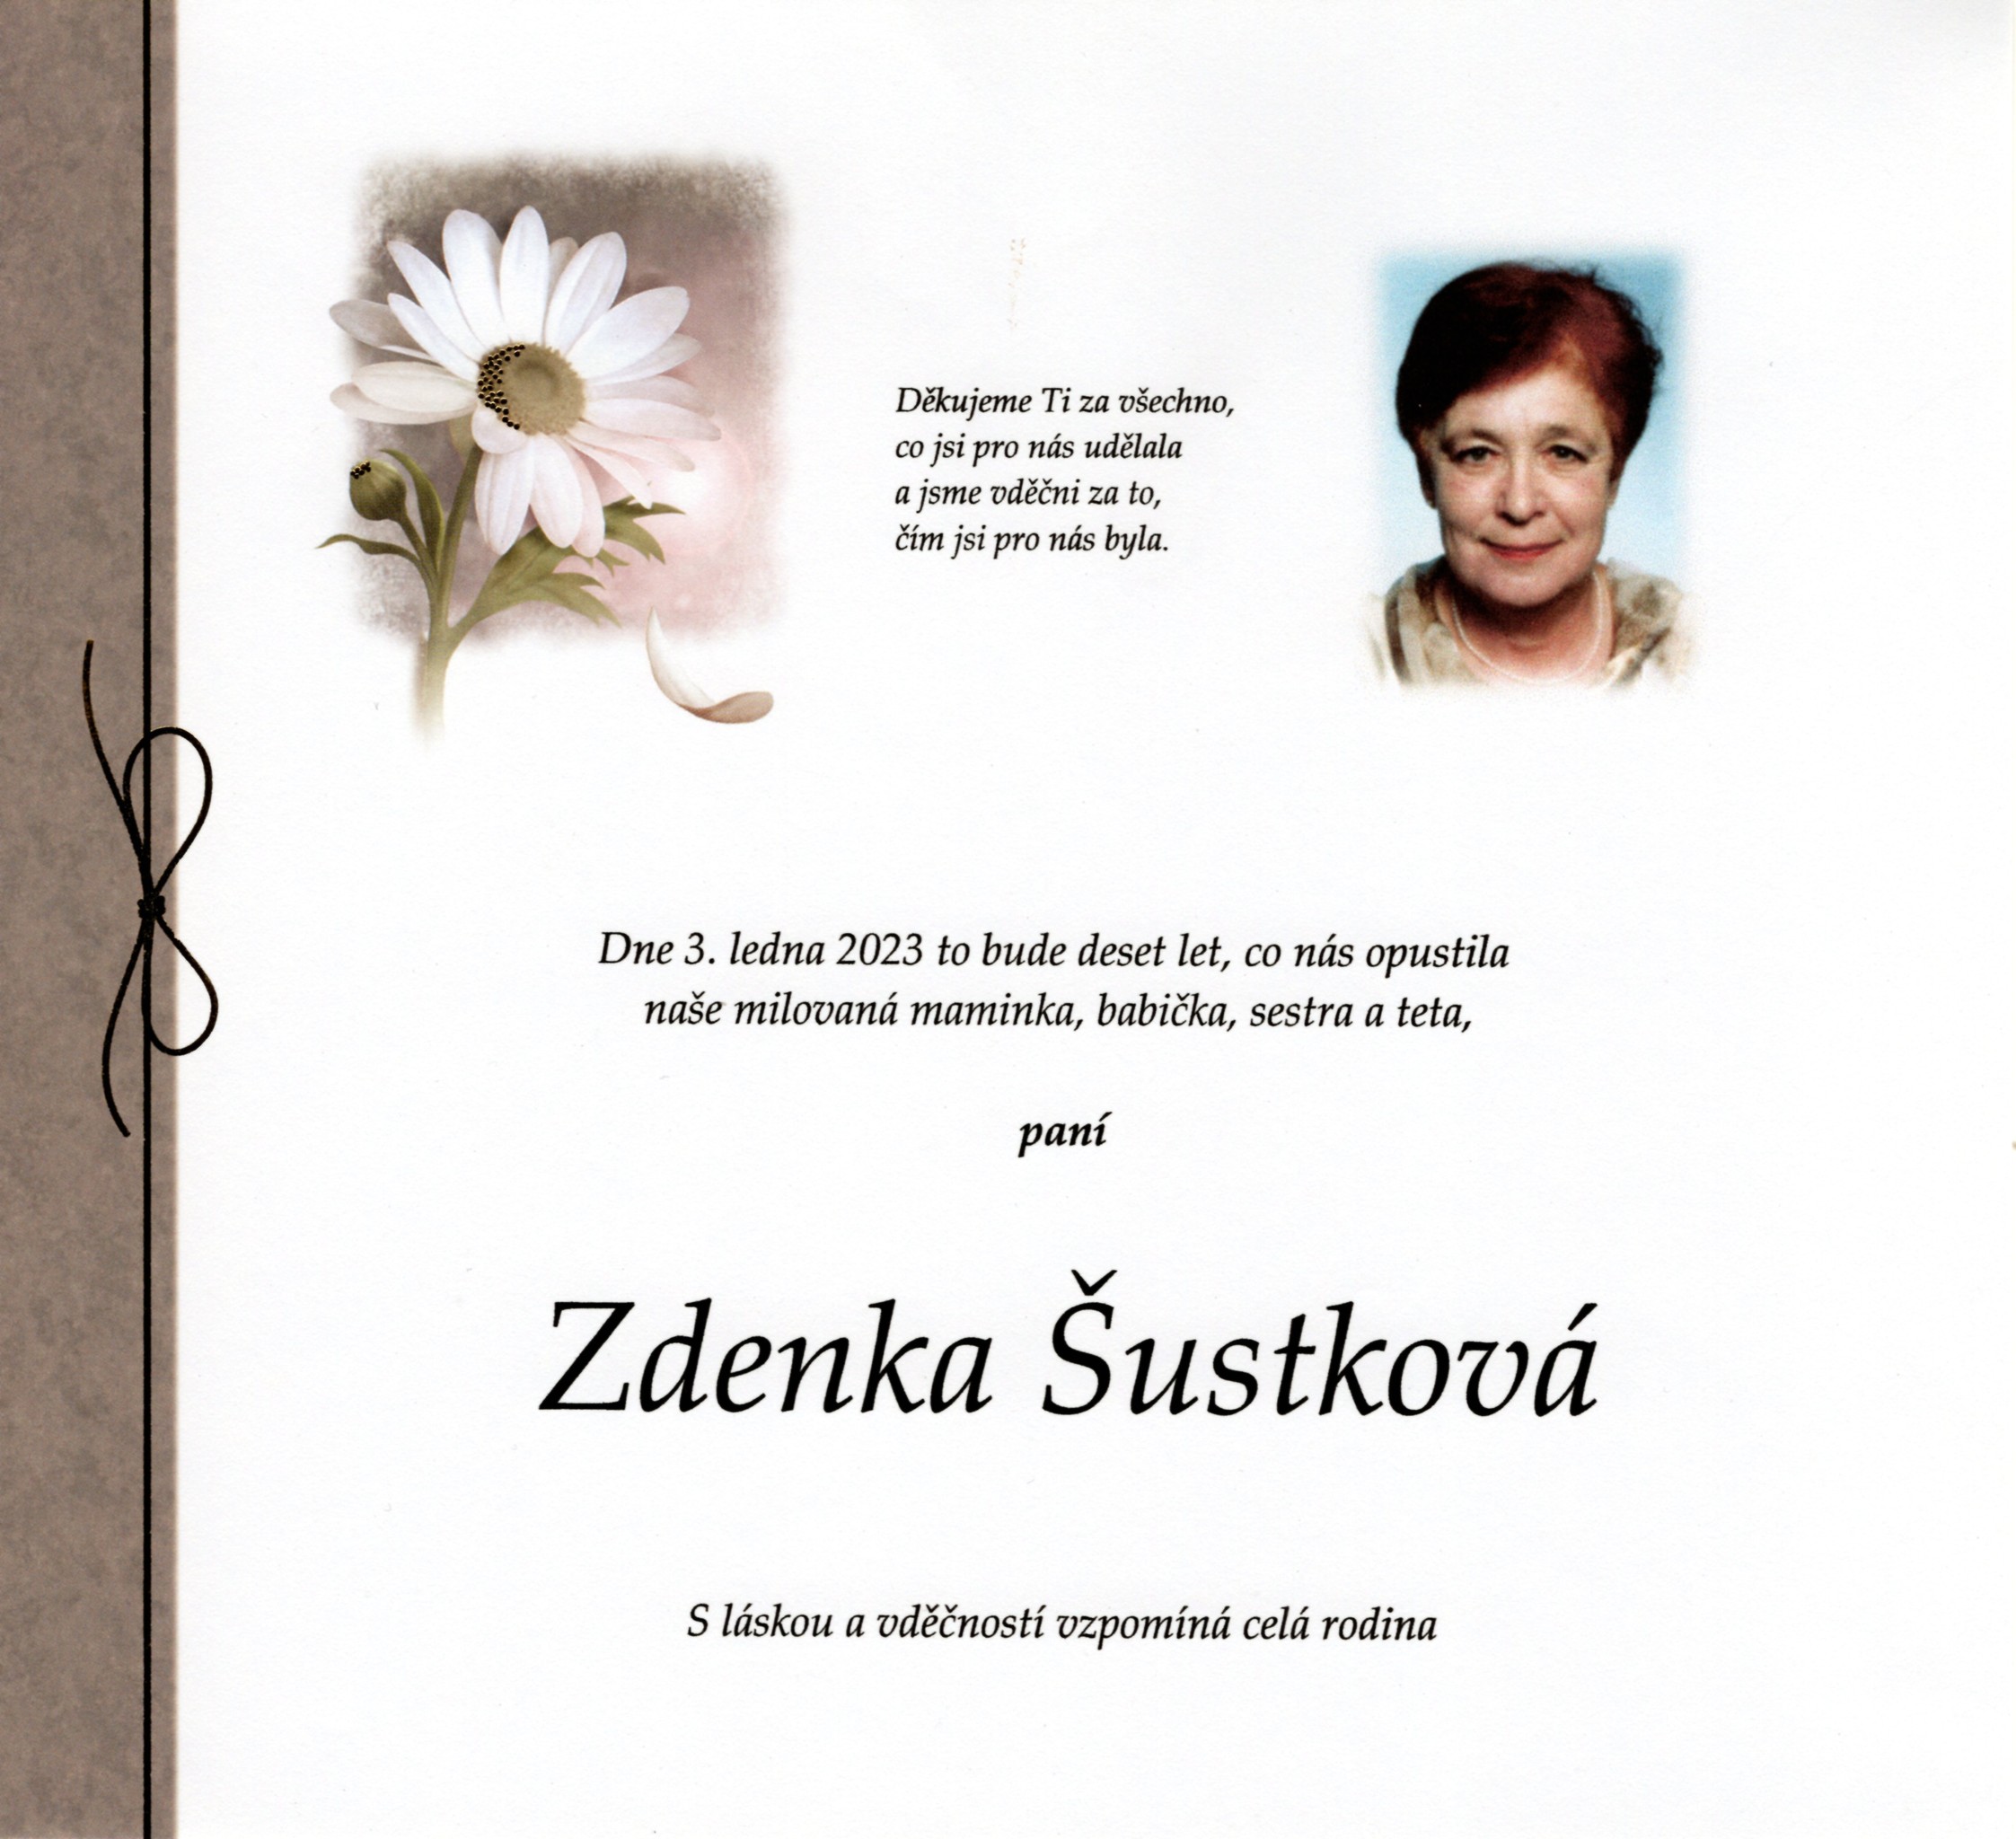 Zdenka Šustková